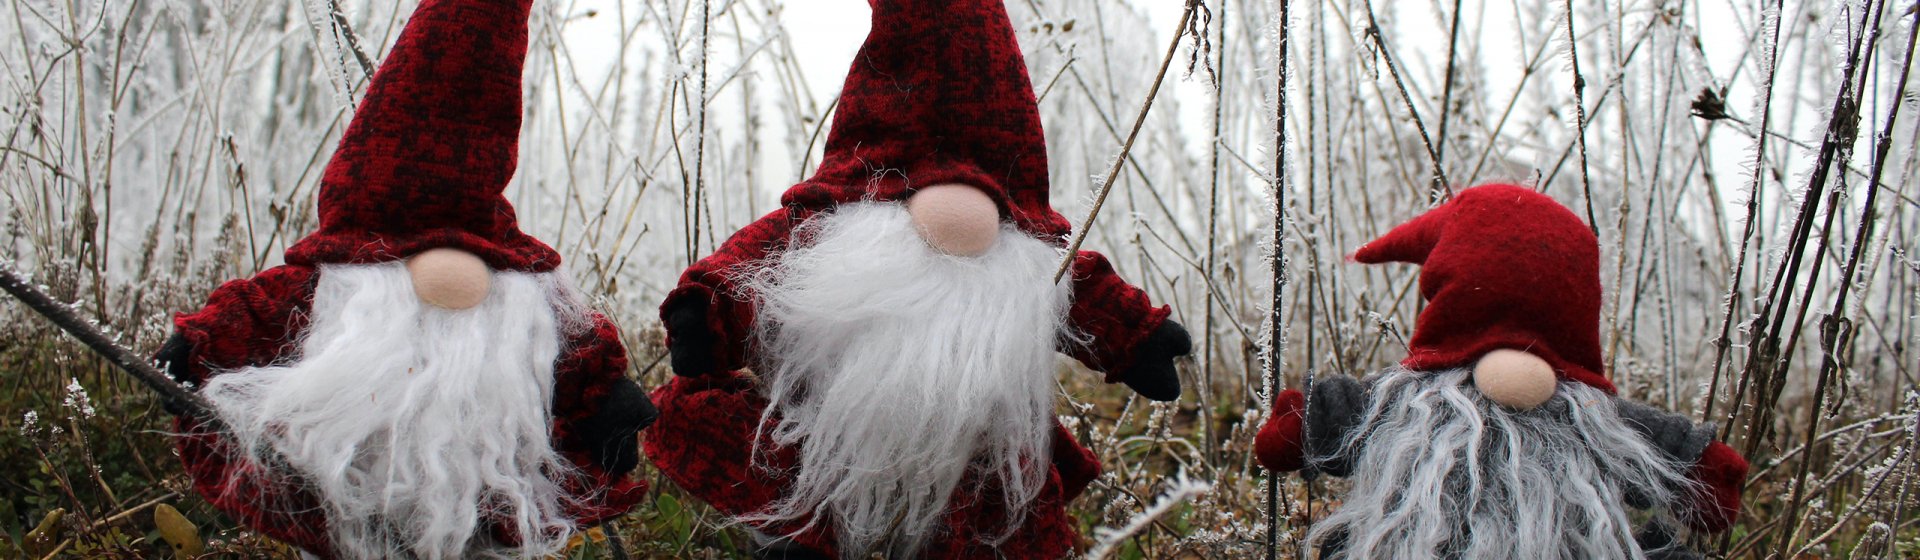 Weihnachtsmann-im-Wald